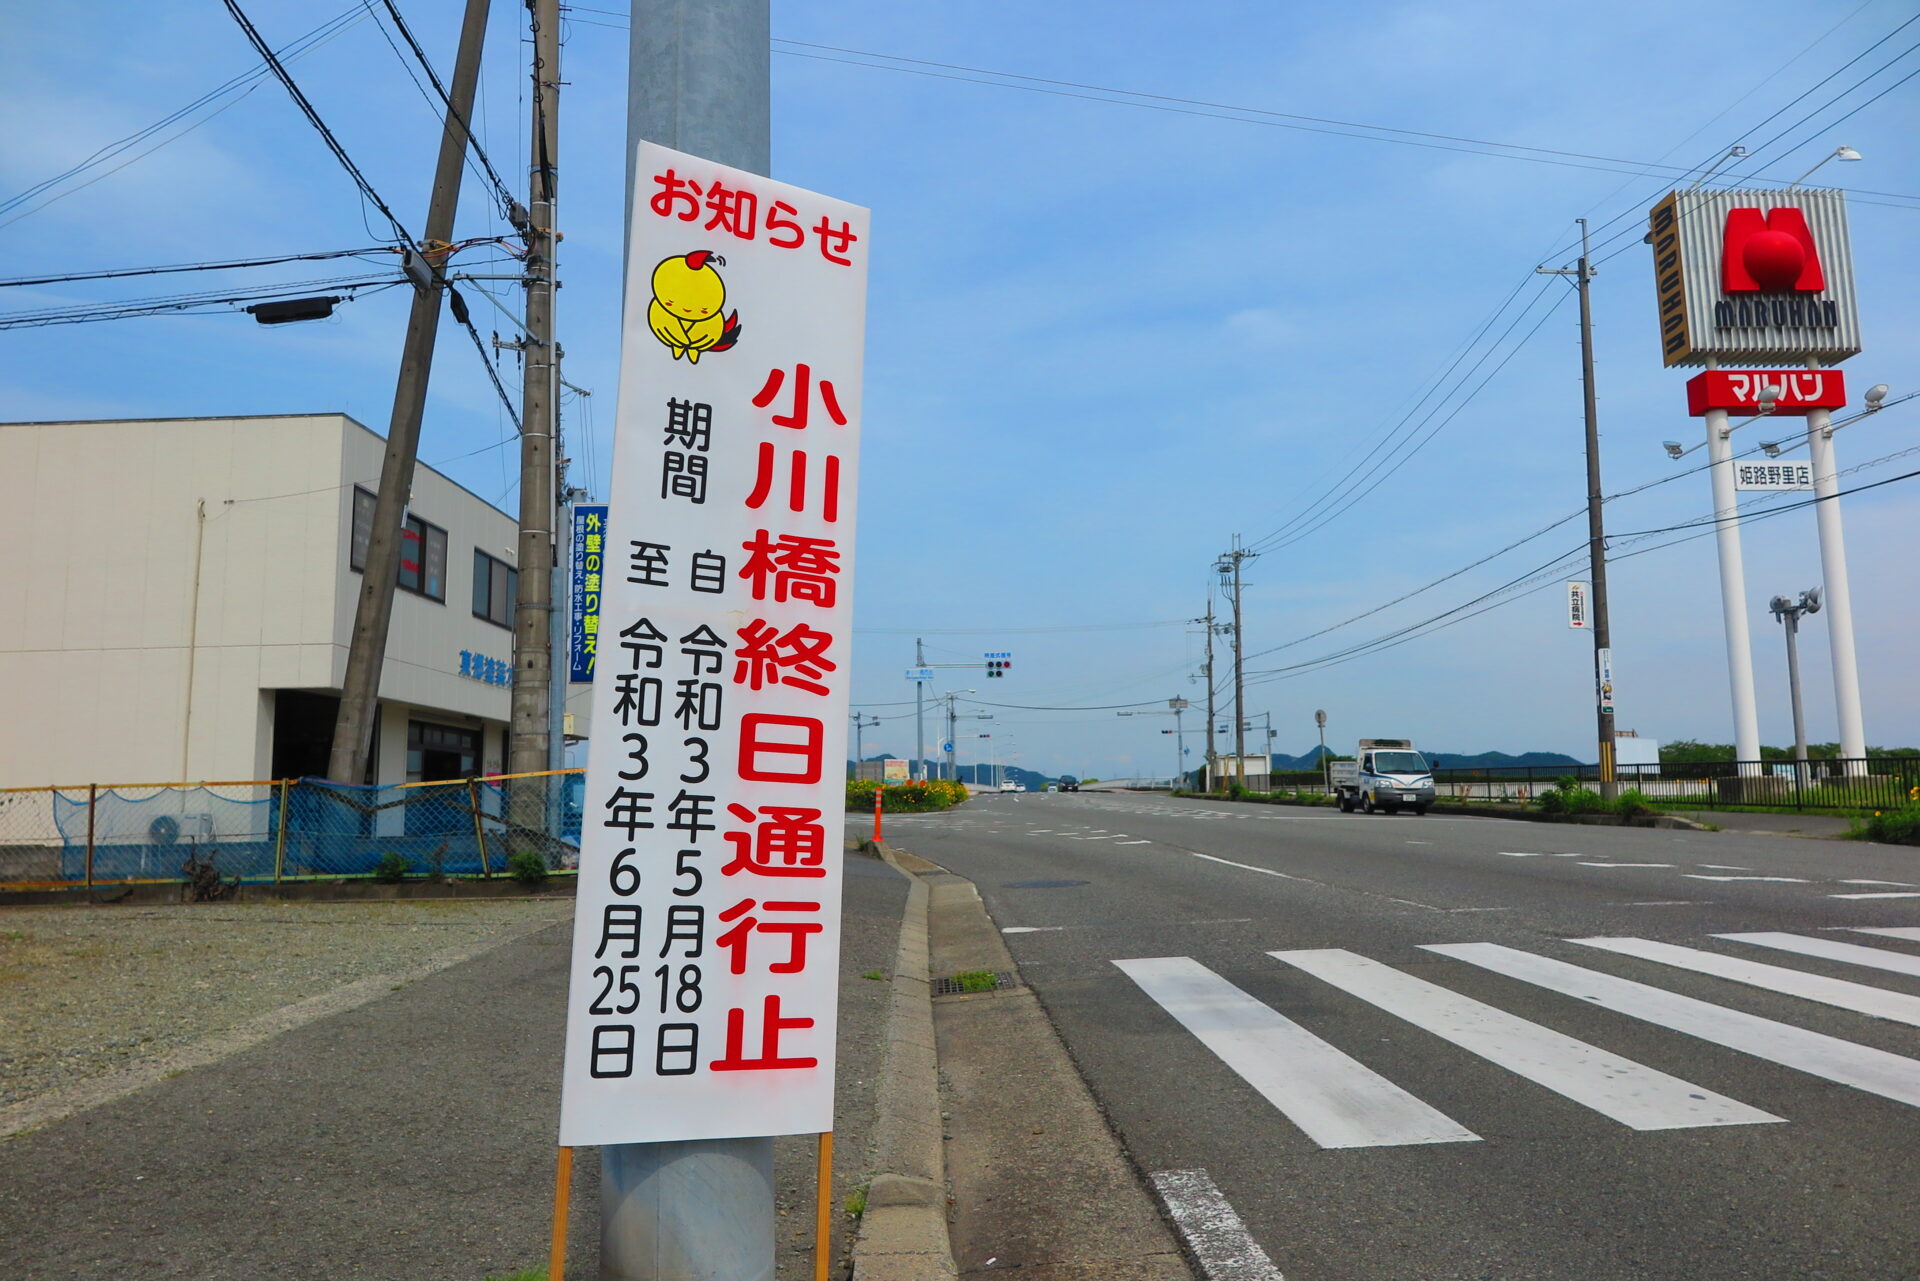 小川橋が5月18日から6月25日まで全面通行止めになるみたい 姫路の種